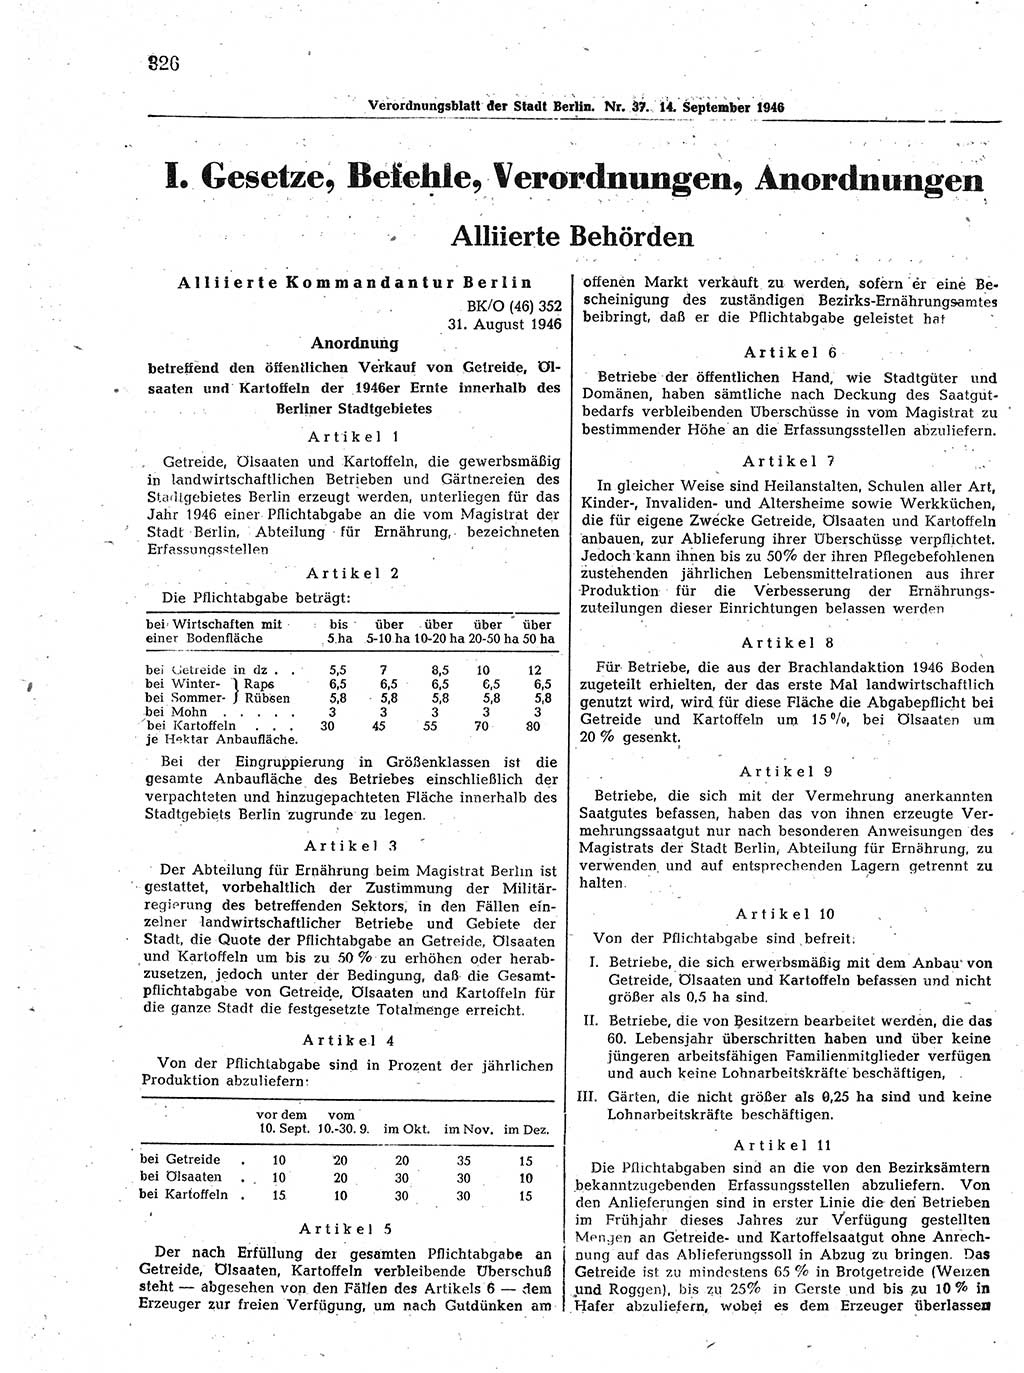 Verordnungsblatt (VOBl.) der Stadt Berlin, für Groß-Berlin 1946, Seite 326 (VOBl. Bln. 1946, S. 326)